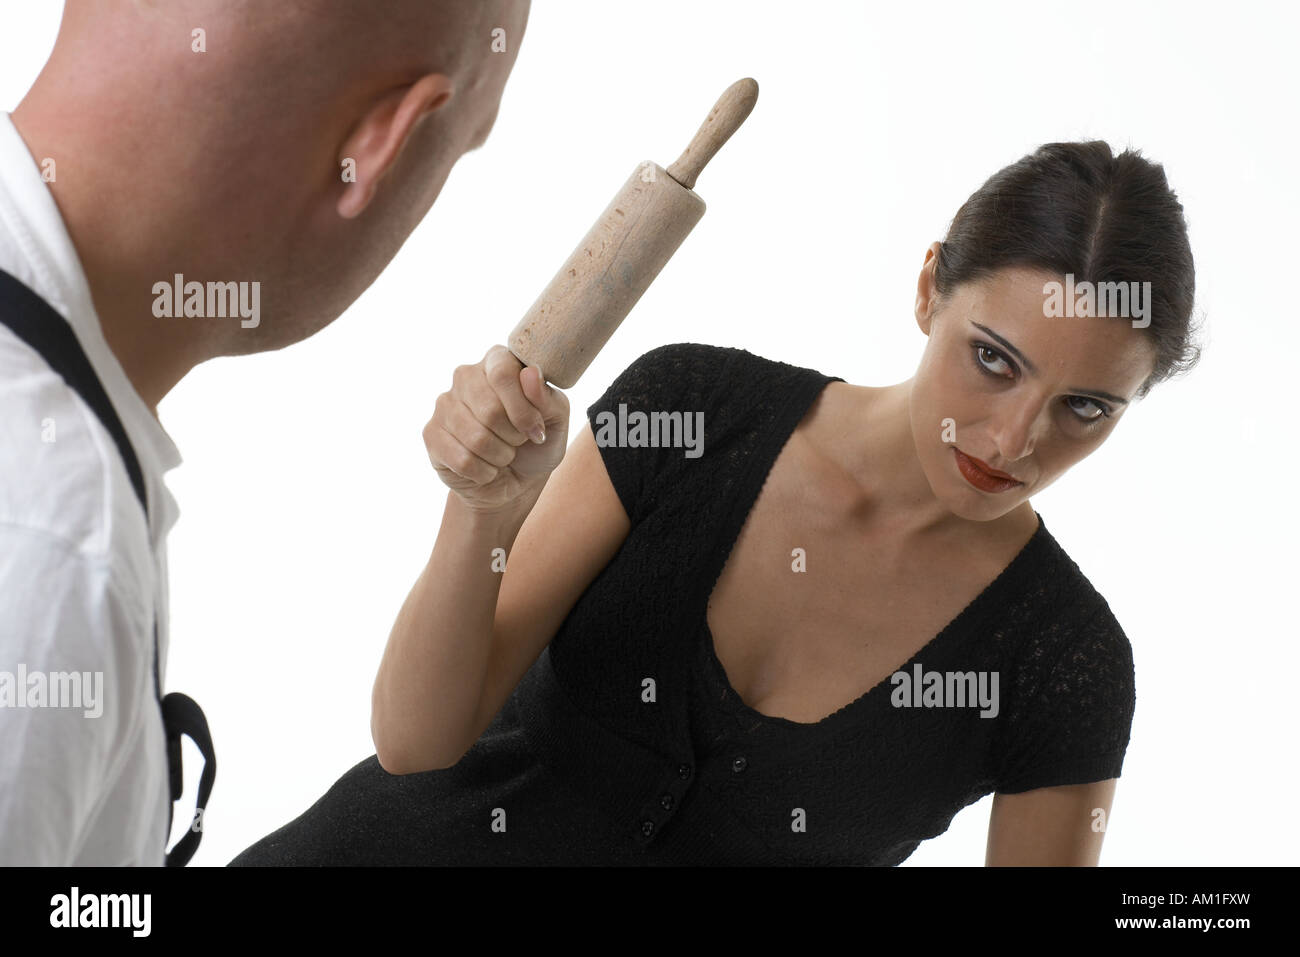 Наказание мужчины женщиной. Женщина бьет скалкой. Мужчина со скалкой.